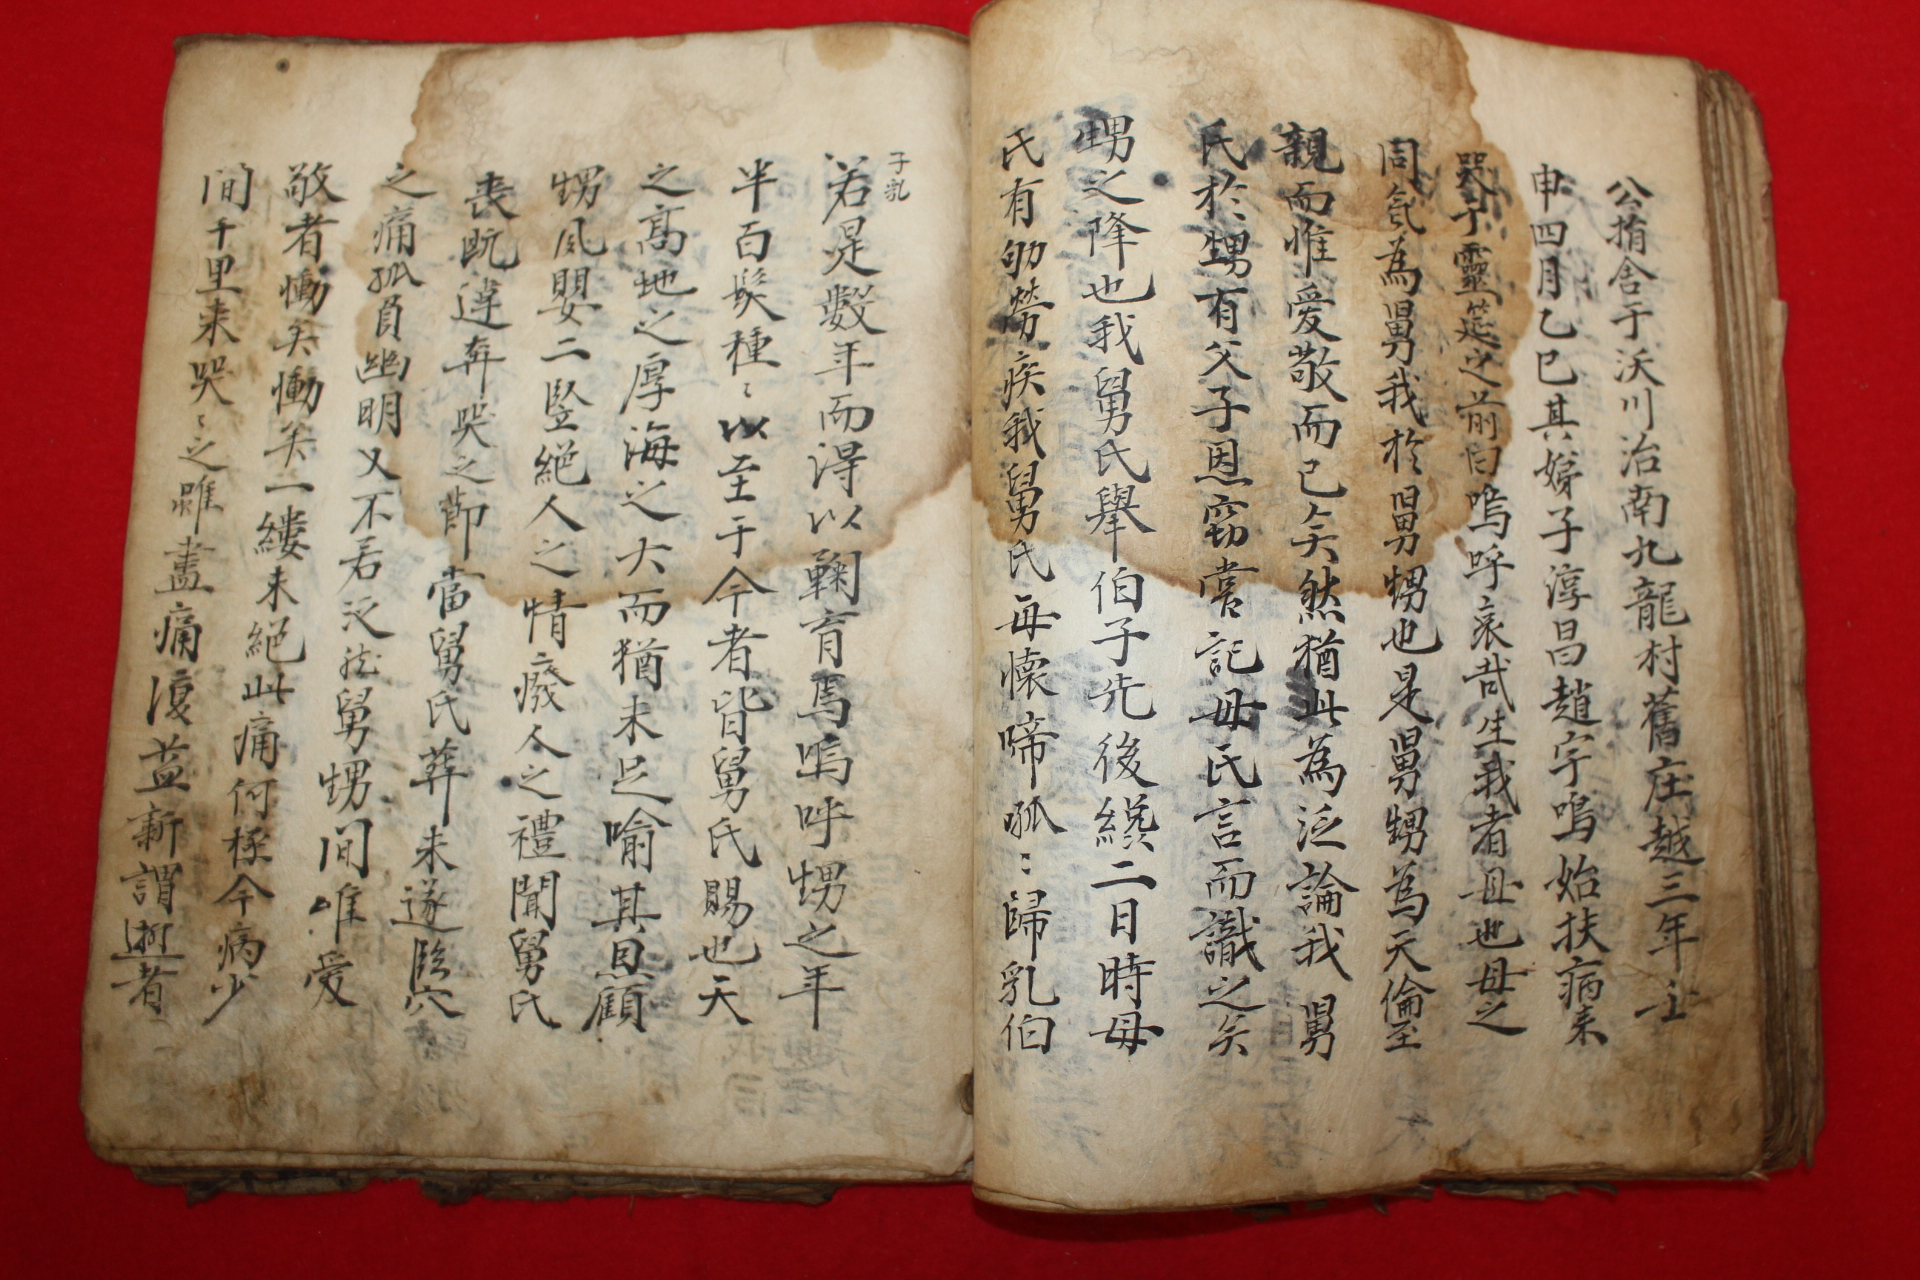 1690년 선산도호부사 곽공의 장례절차와 사용된 옷의 치수까지 기록된 고필사본 1책